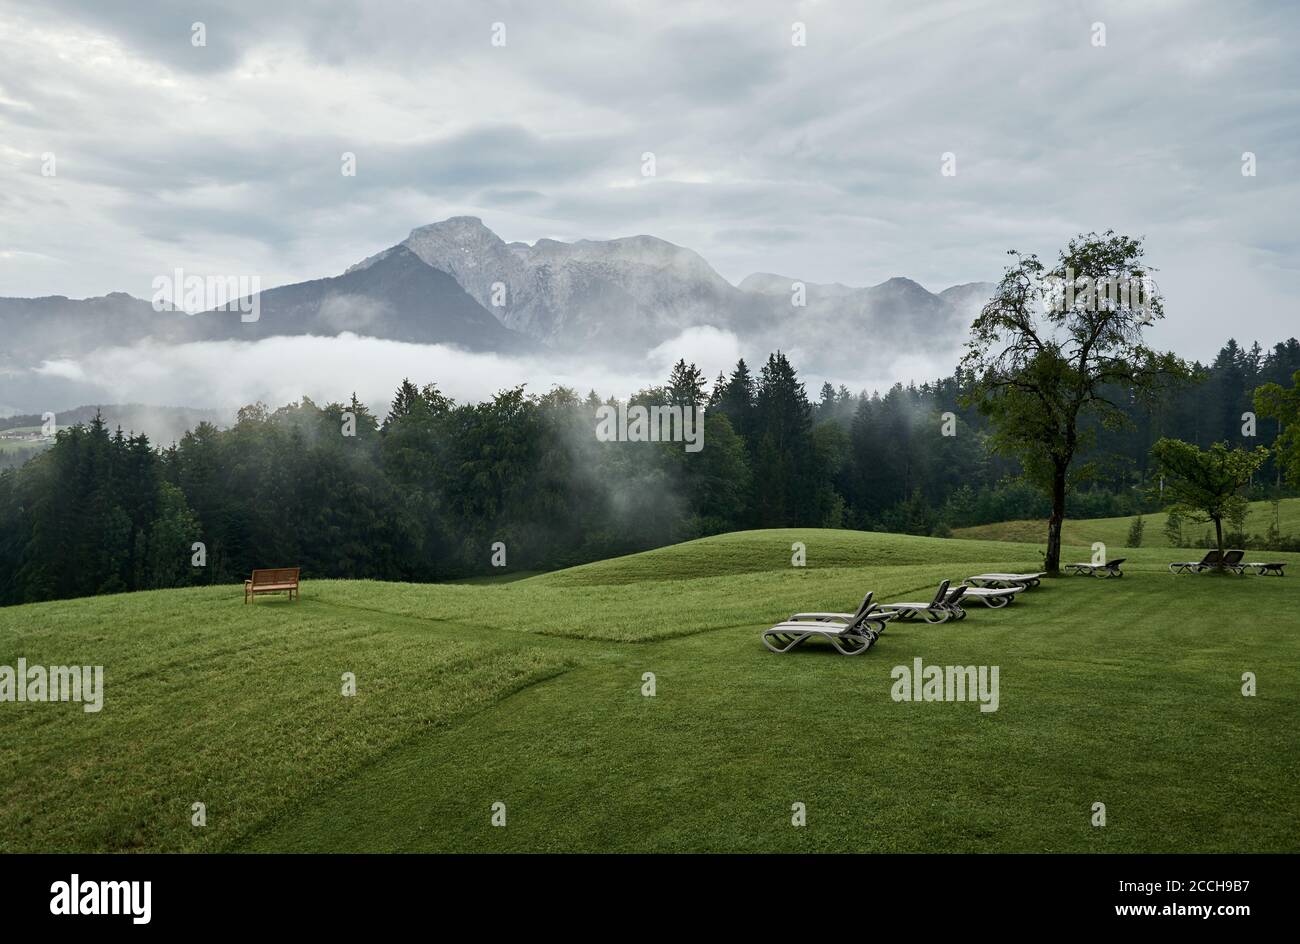 Vista panoramica del paesaggio foggoso con la catena montuosa delle Alpi Berchtesgaden, Germania Foto Stock